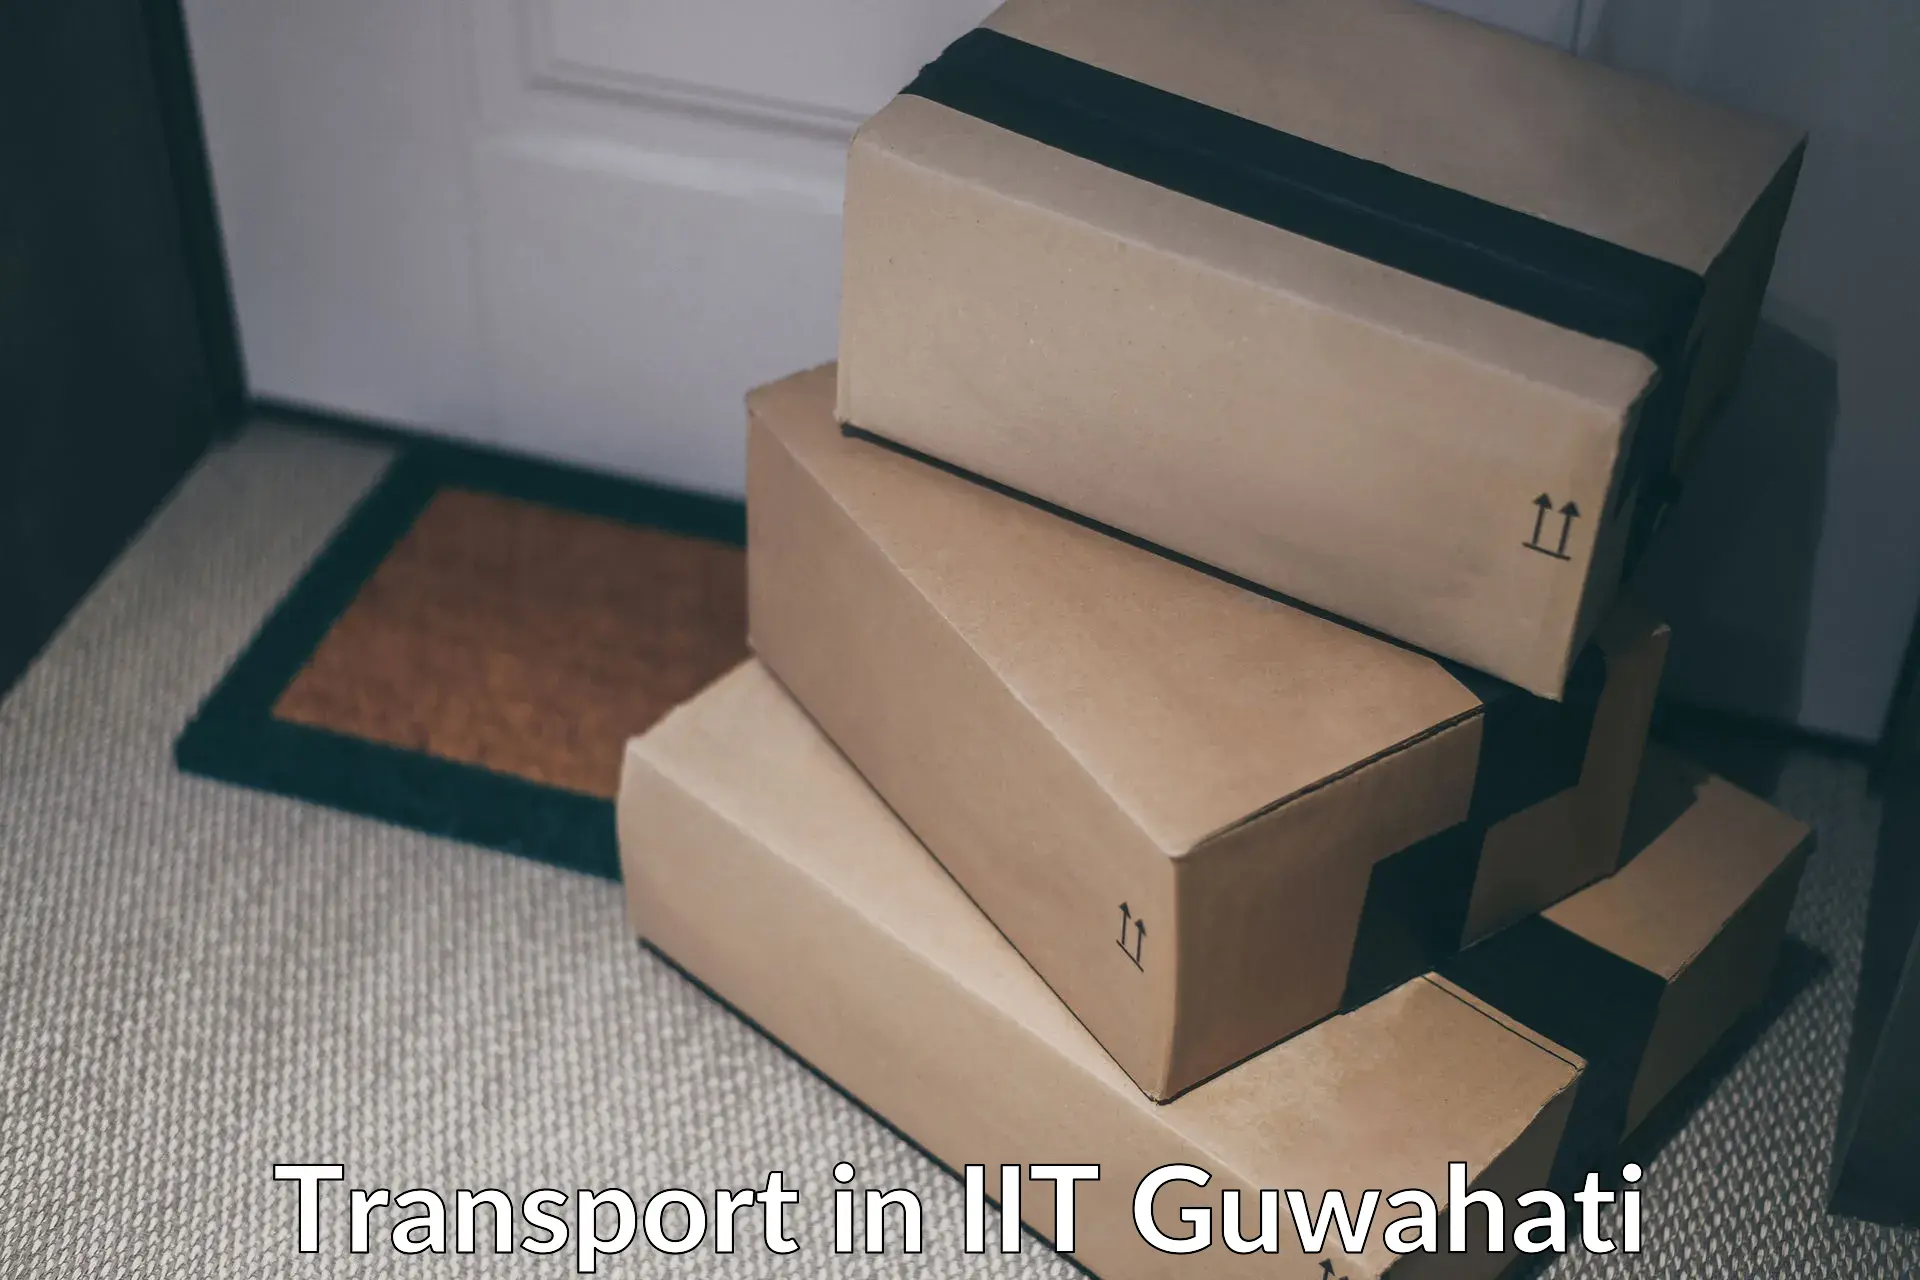 Interstate transport services in IIT Guwahati